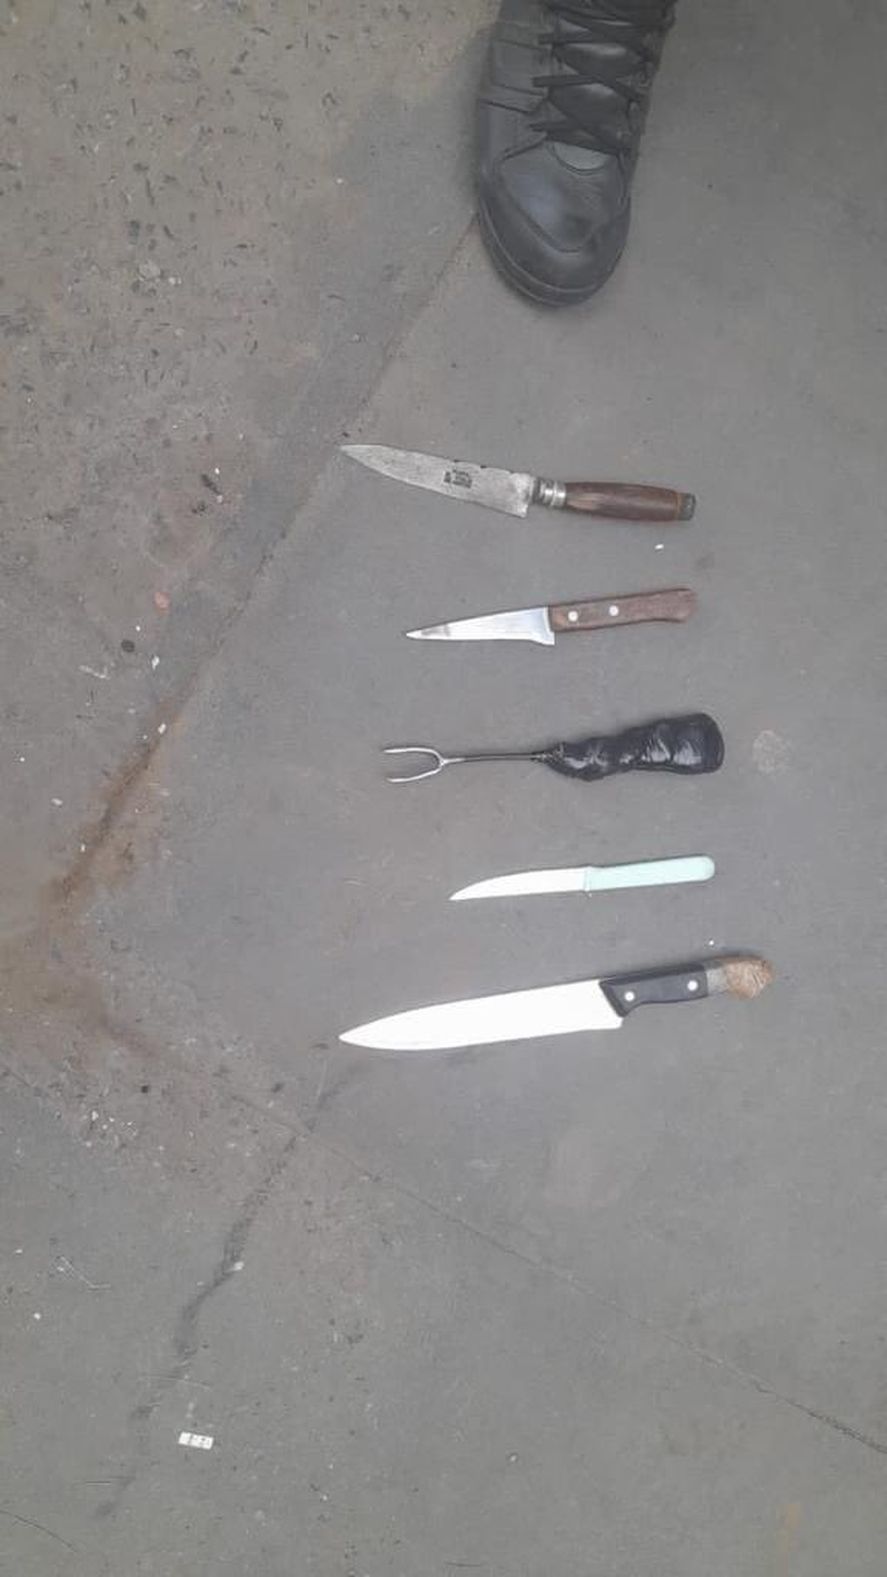 Cuchillos de utilización casera y facas estilo carcelarias se incautaron en la pelea de jóvenes en Florencio Varela y Berazategui 